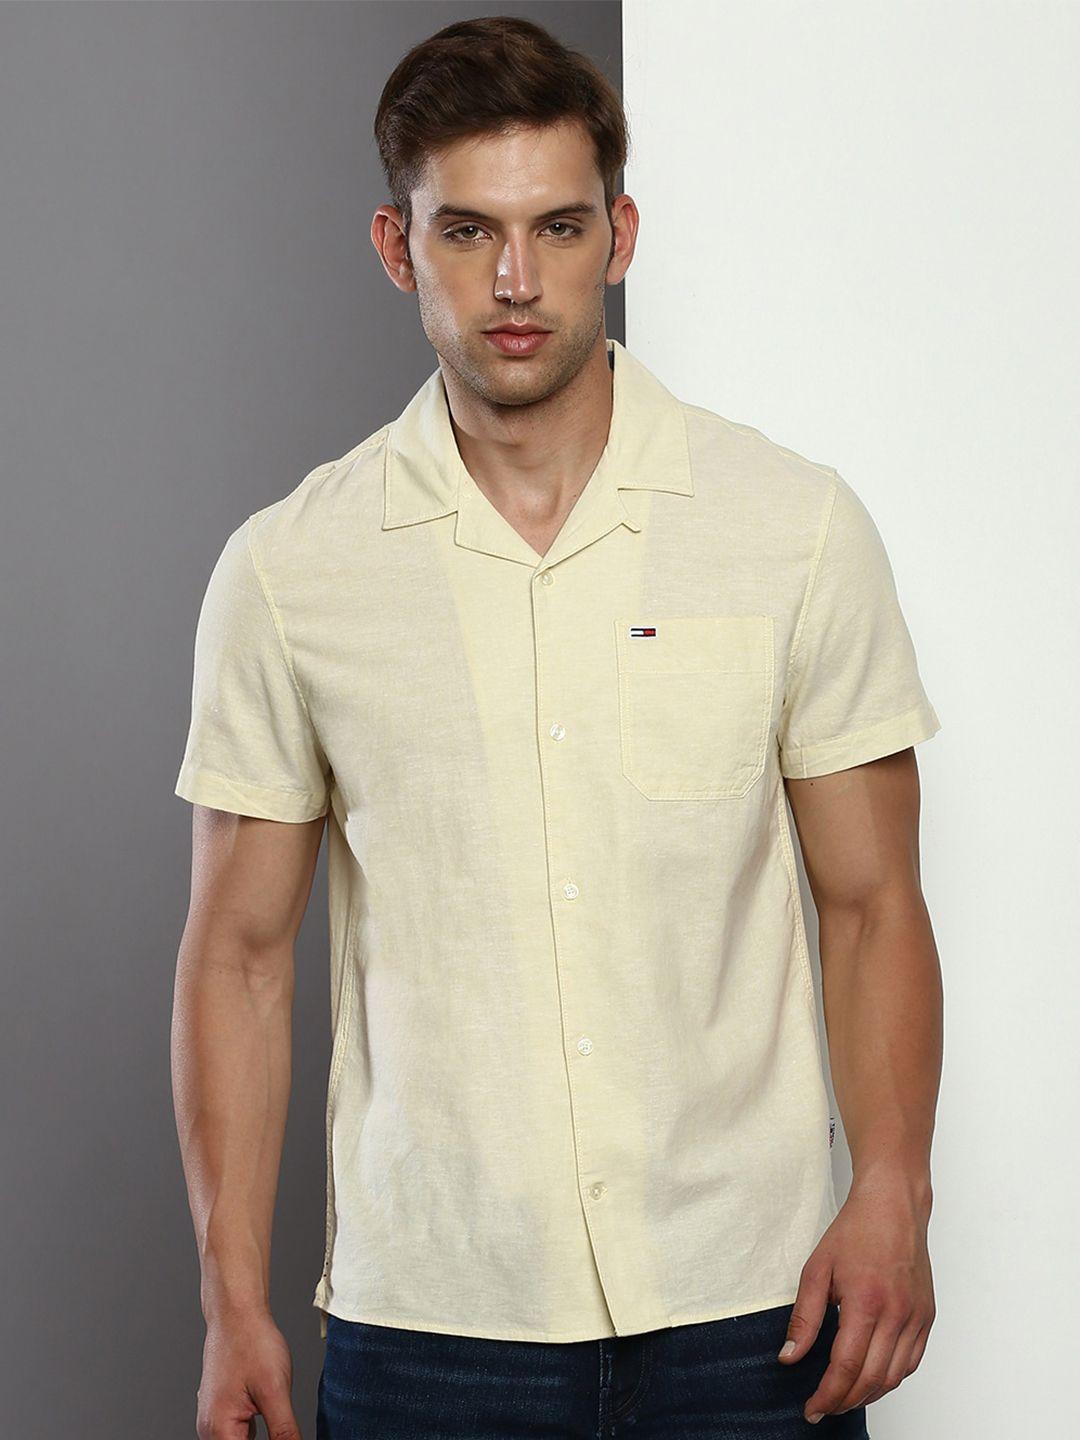 tommy hilfiger cuban collar short sleeves cotton linen casual shirt